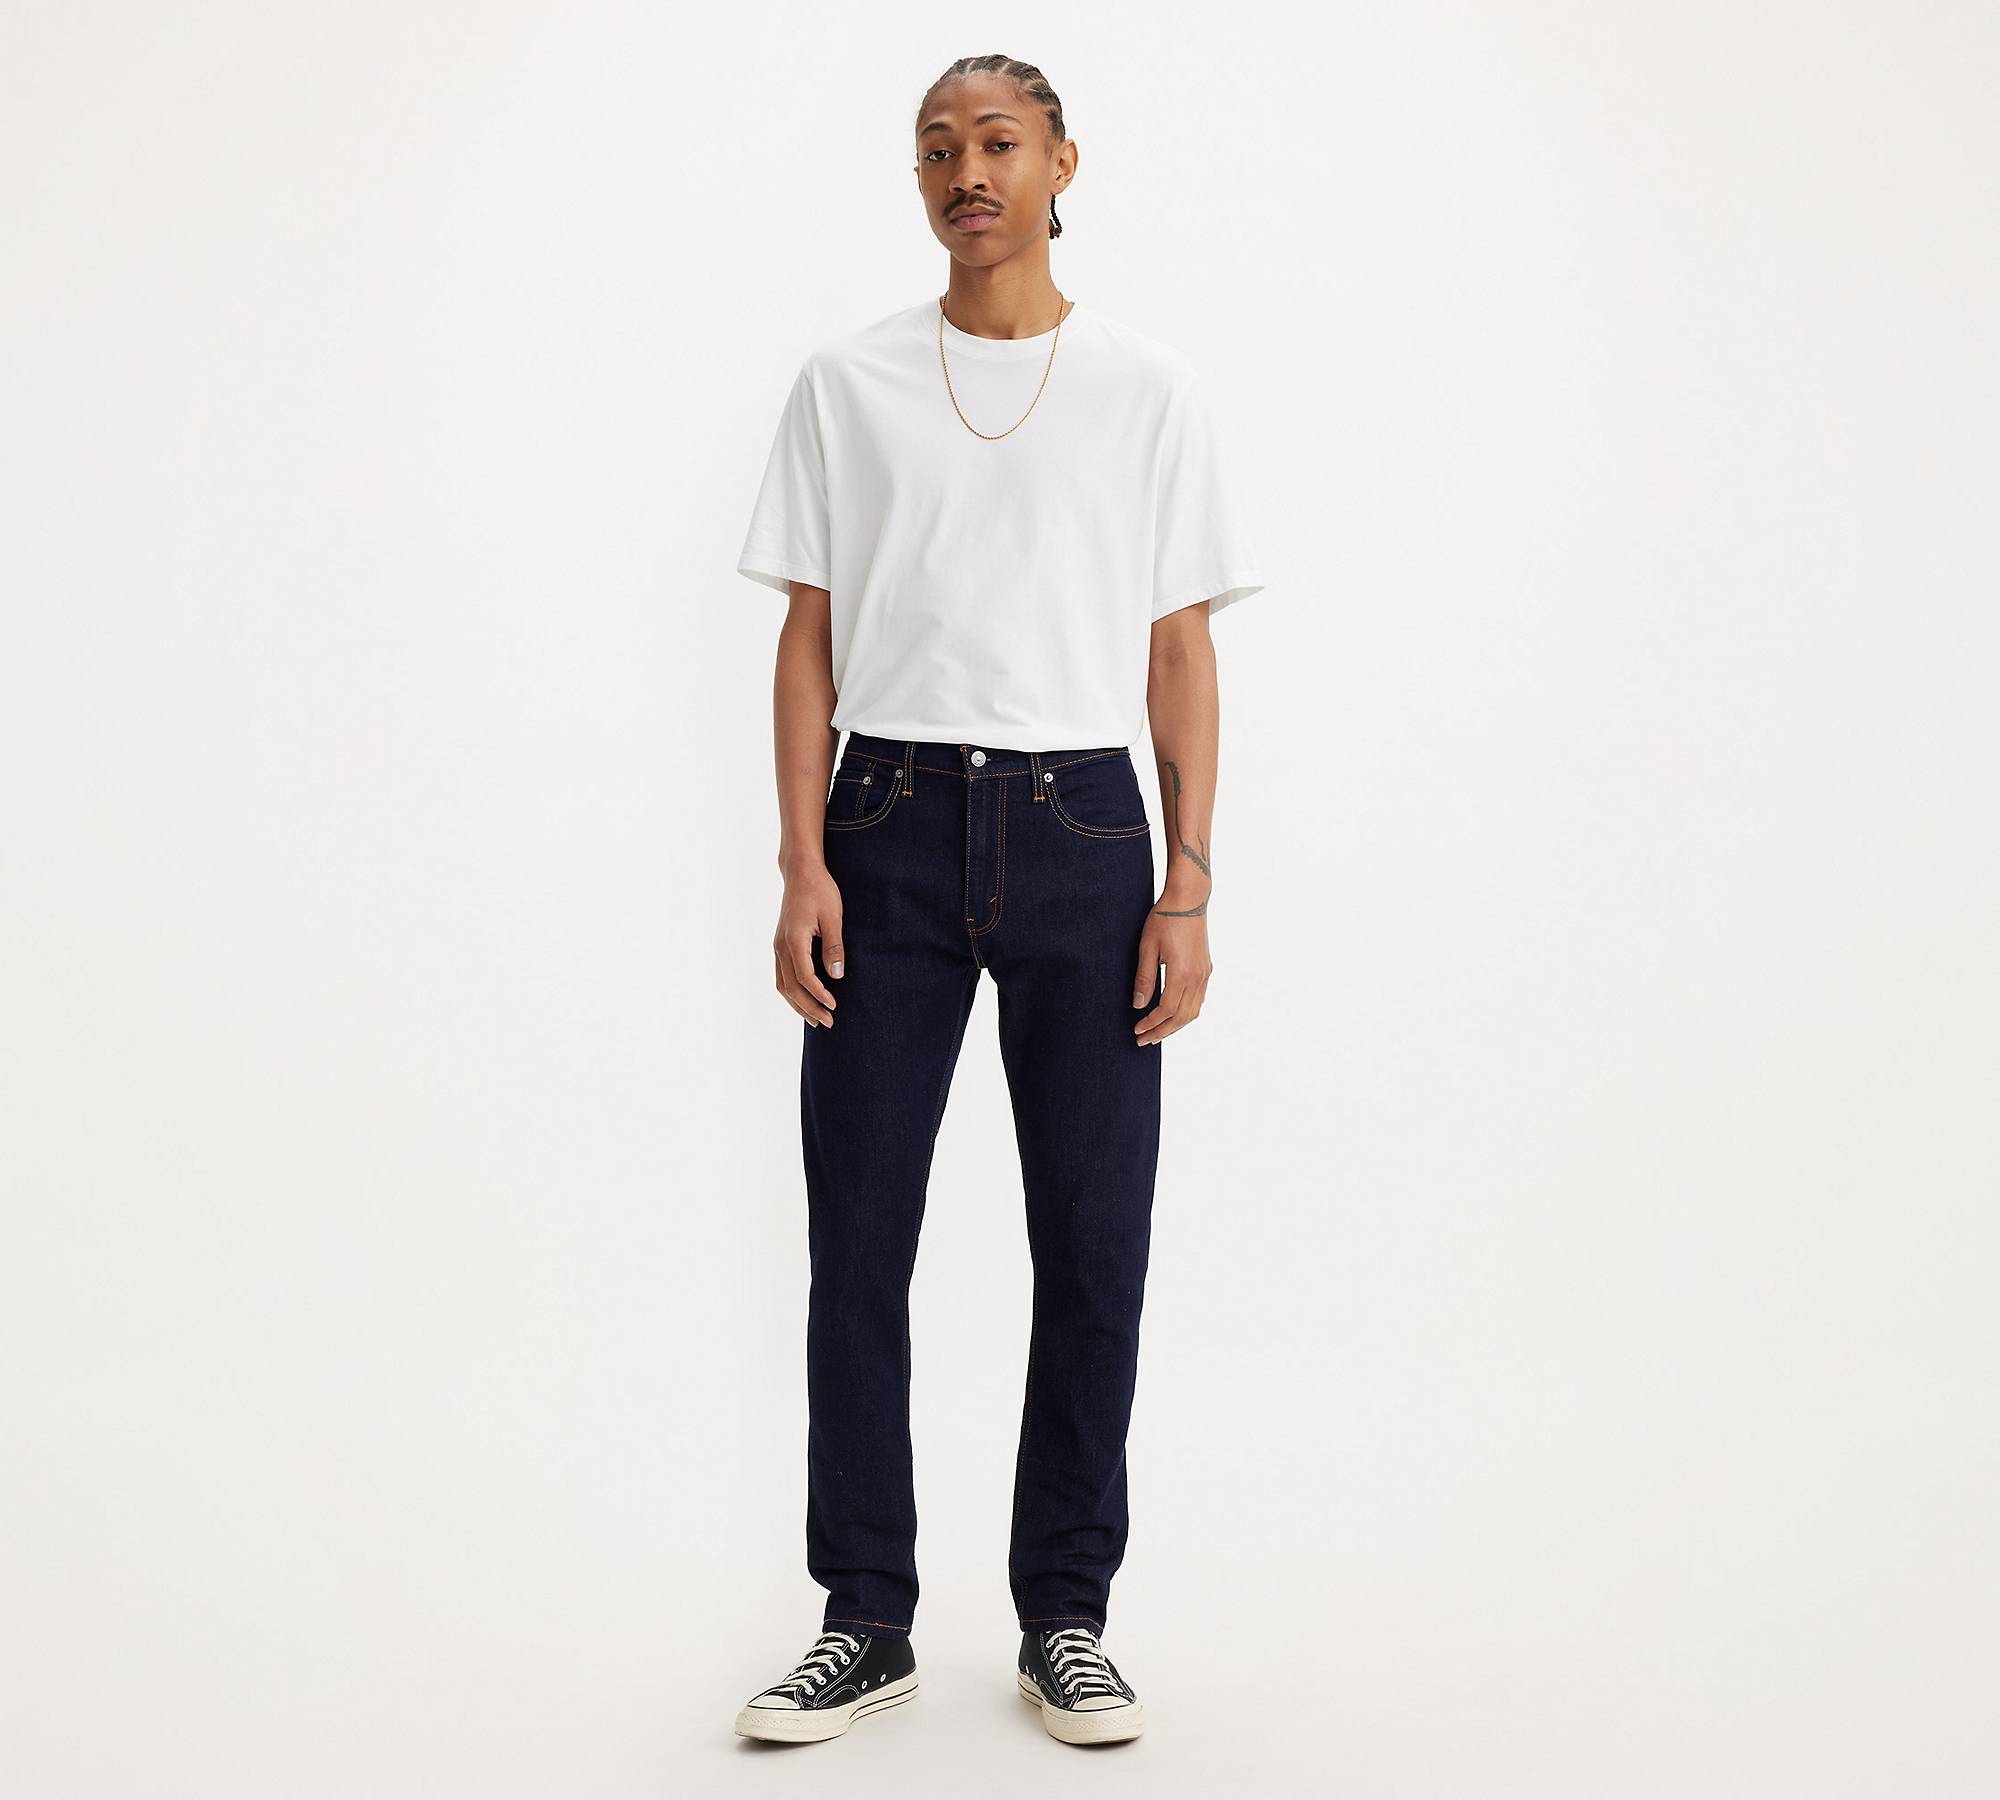 512™ Slim Taper Flex Men's Jeans - Dark | Levi's®